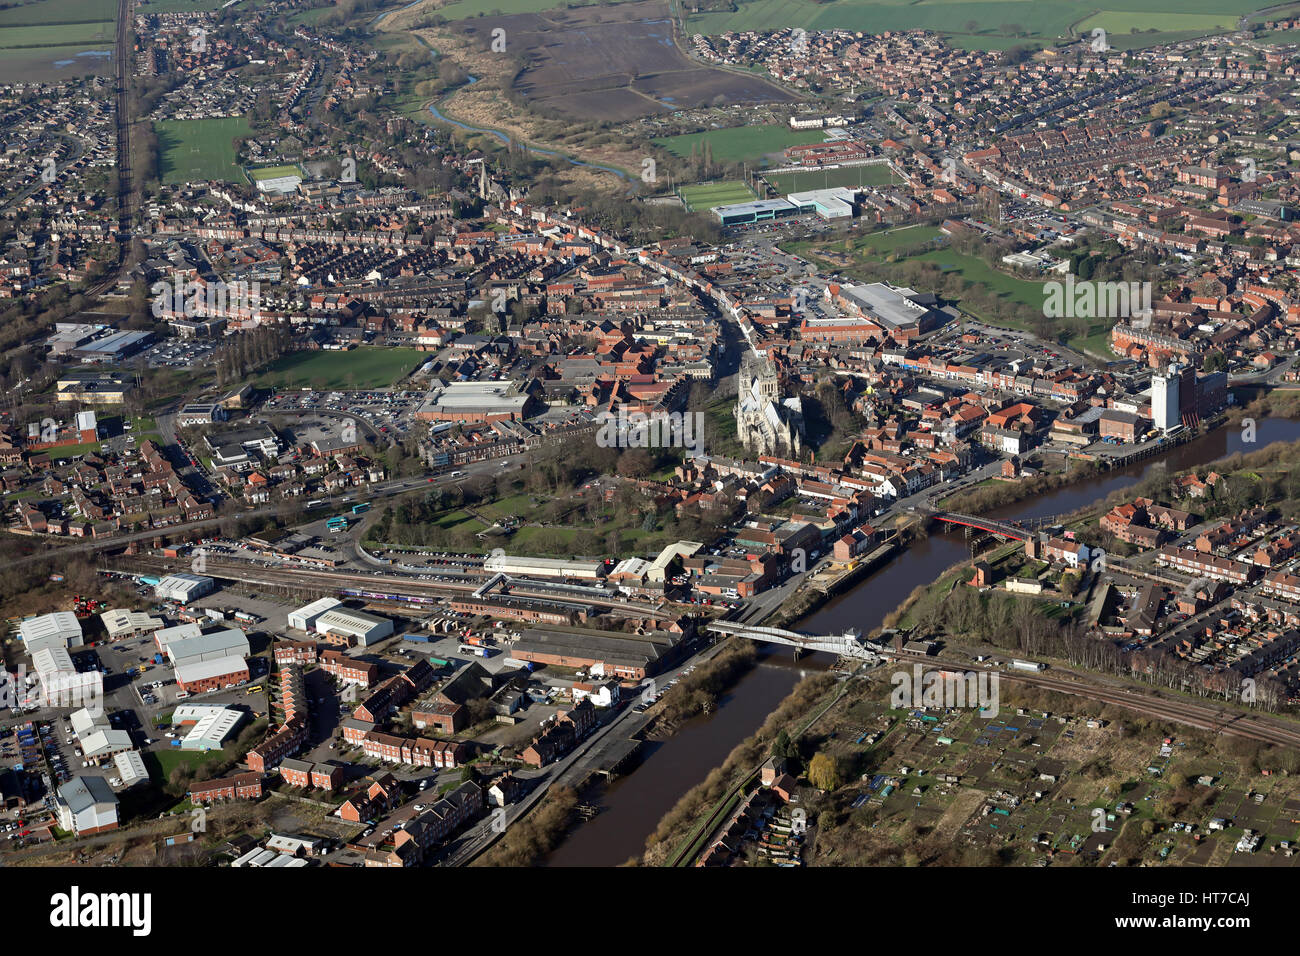 Vue aérienne de la ville de marché de Yorkshire Selby sur la rivière Ouse, UK Banque D'Images